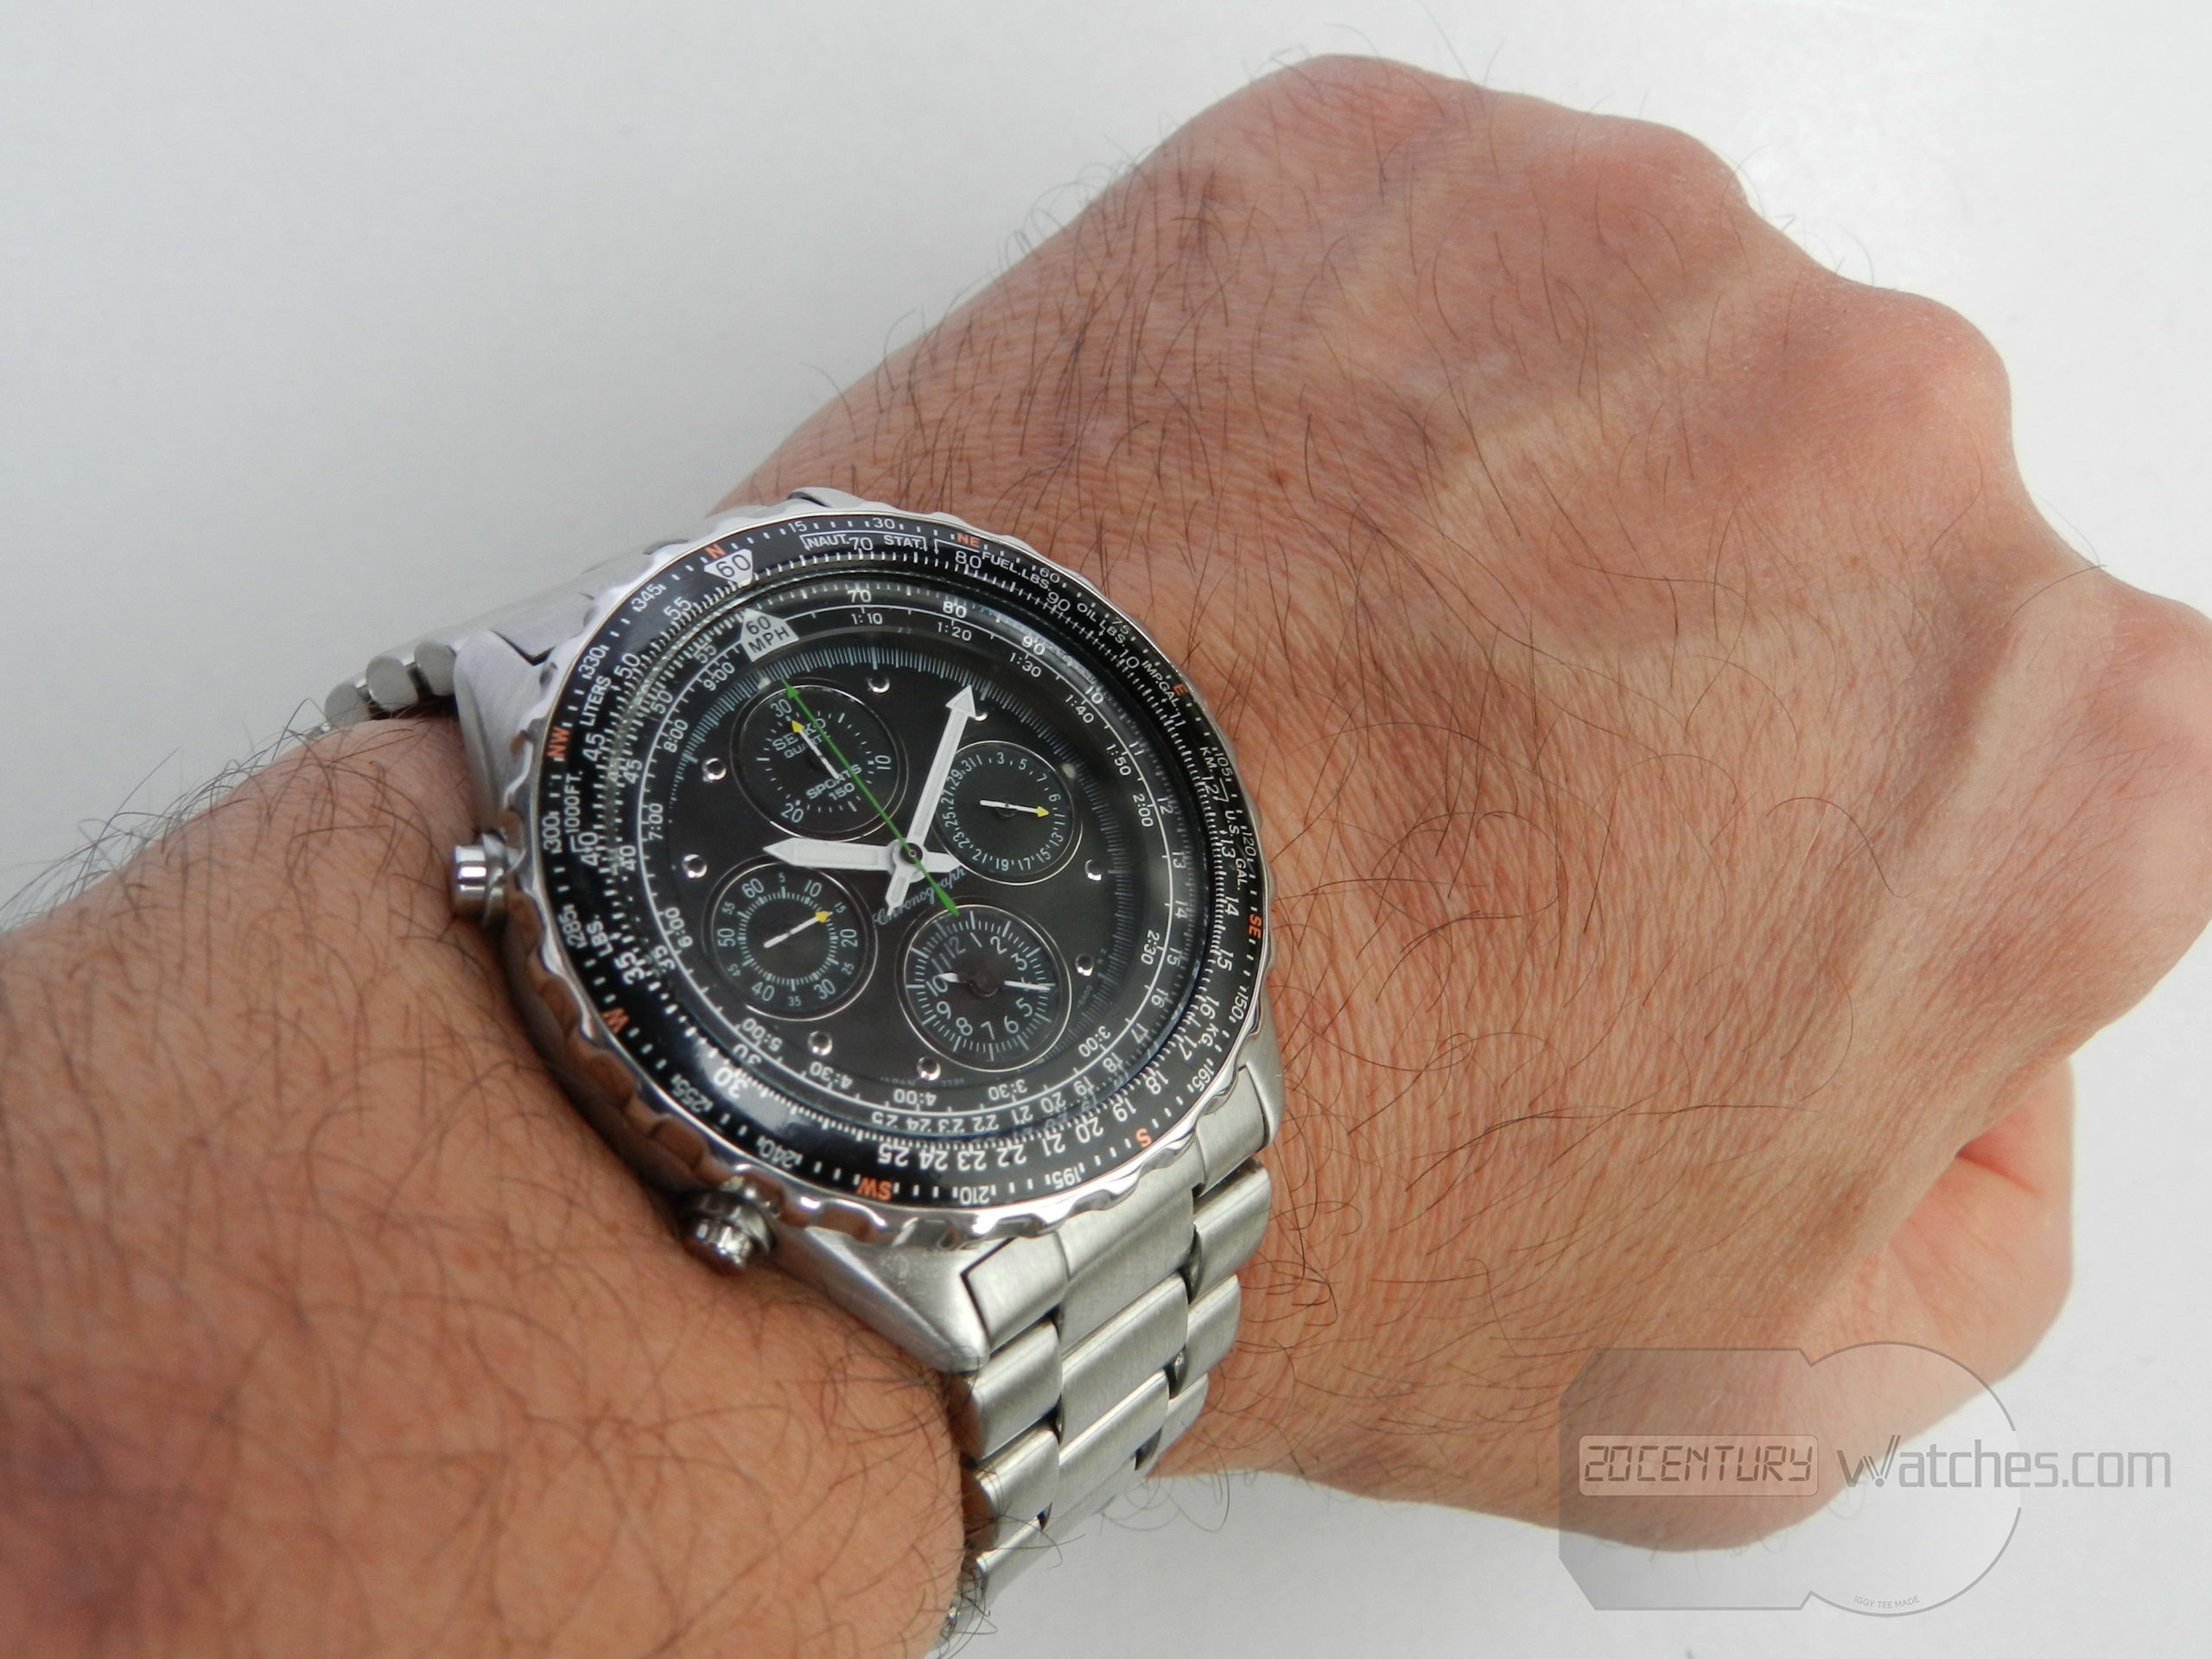 Seiko Sports 150 Chronograph pilot – 20th Century Watches